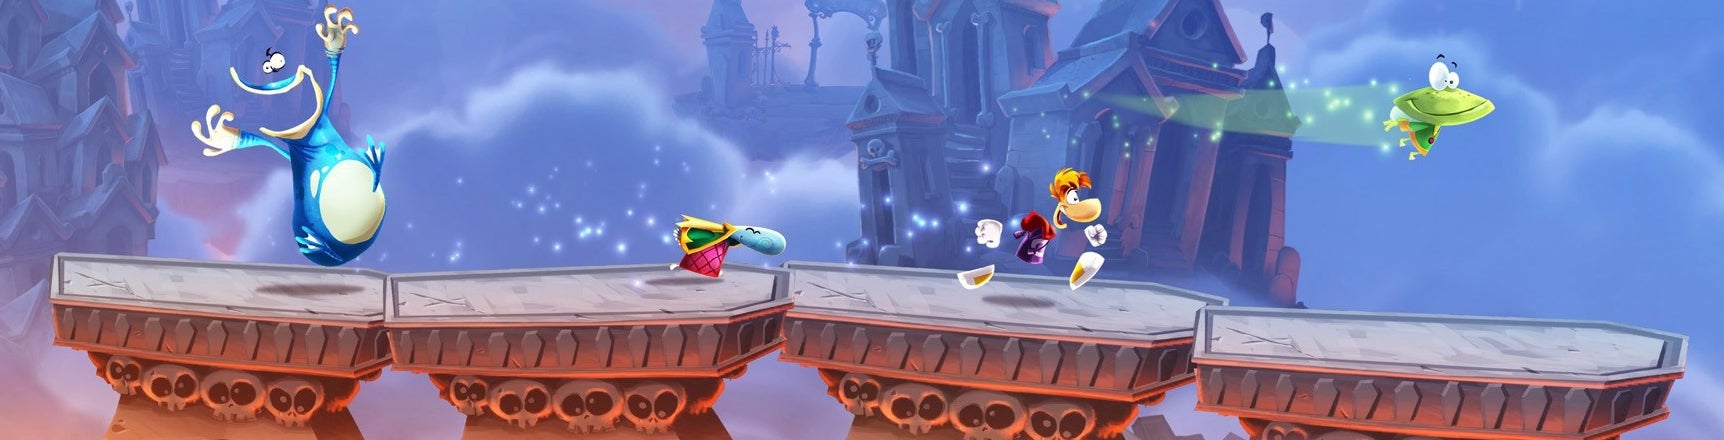 Imagen para Rayman Legends en Nintendo Switch... ¿la versión definitiva?